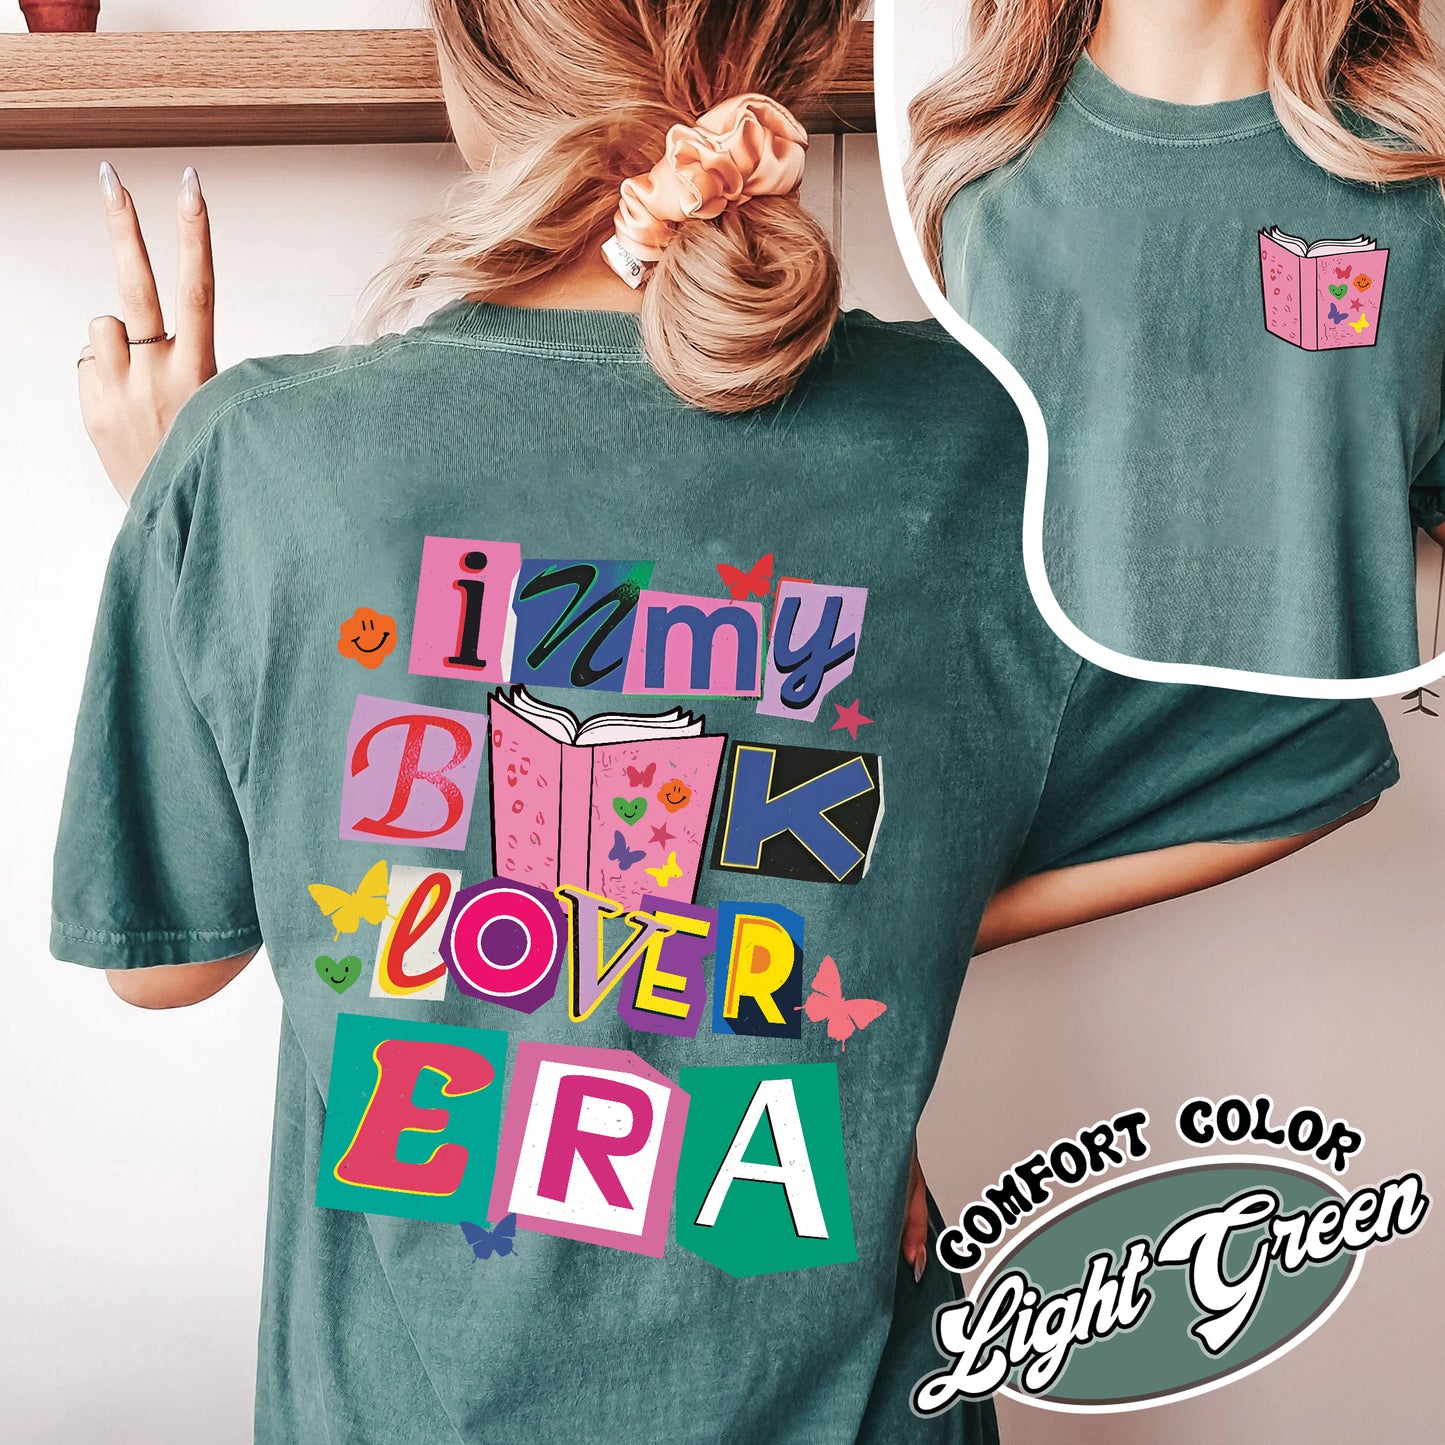 In My Book Lover Era Comfort Color Shirt, Book Club Members, Book Lovers Club Shirt